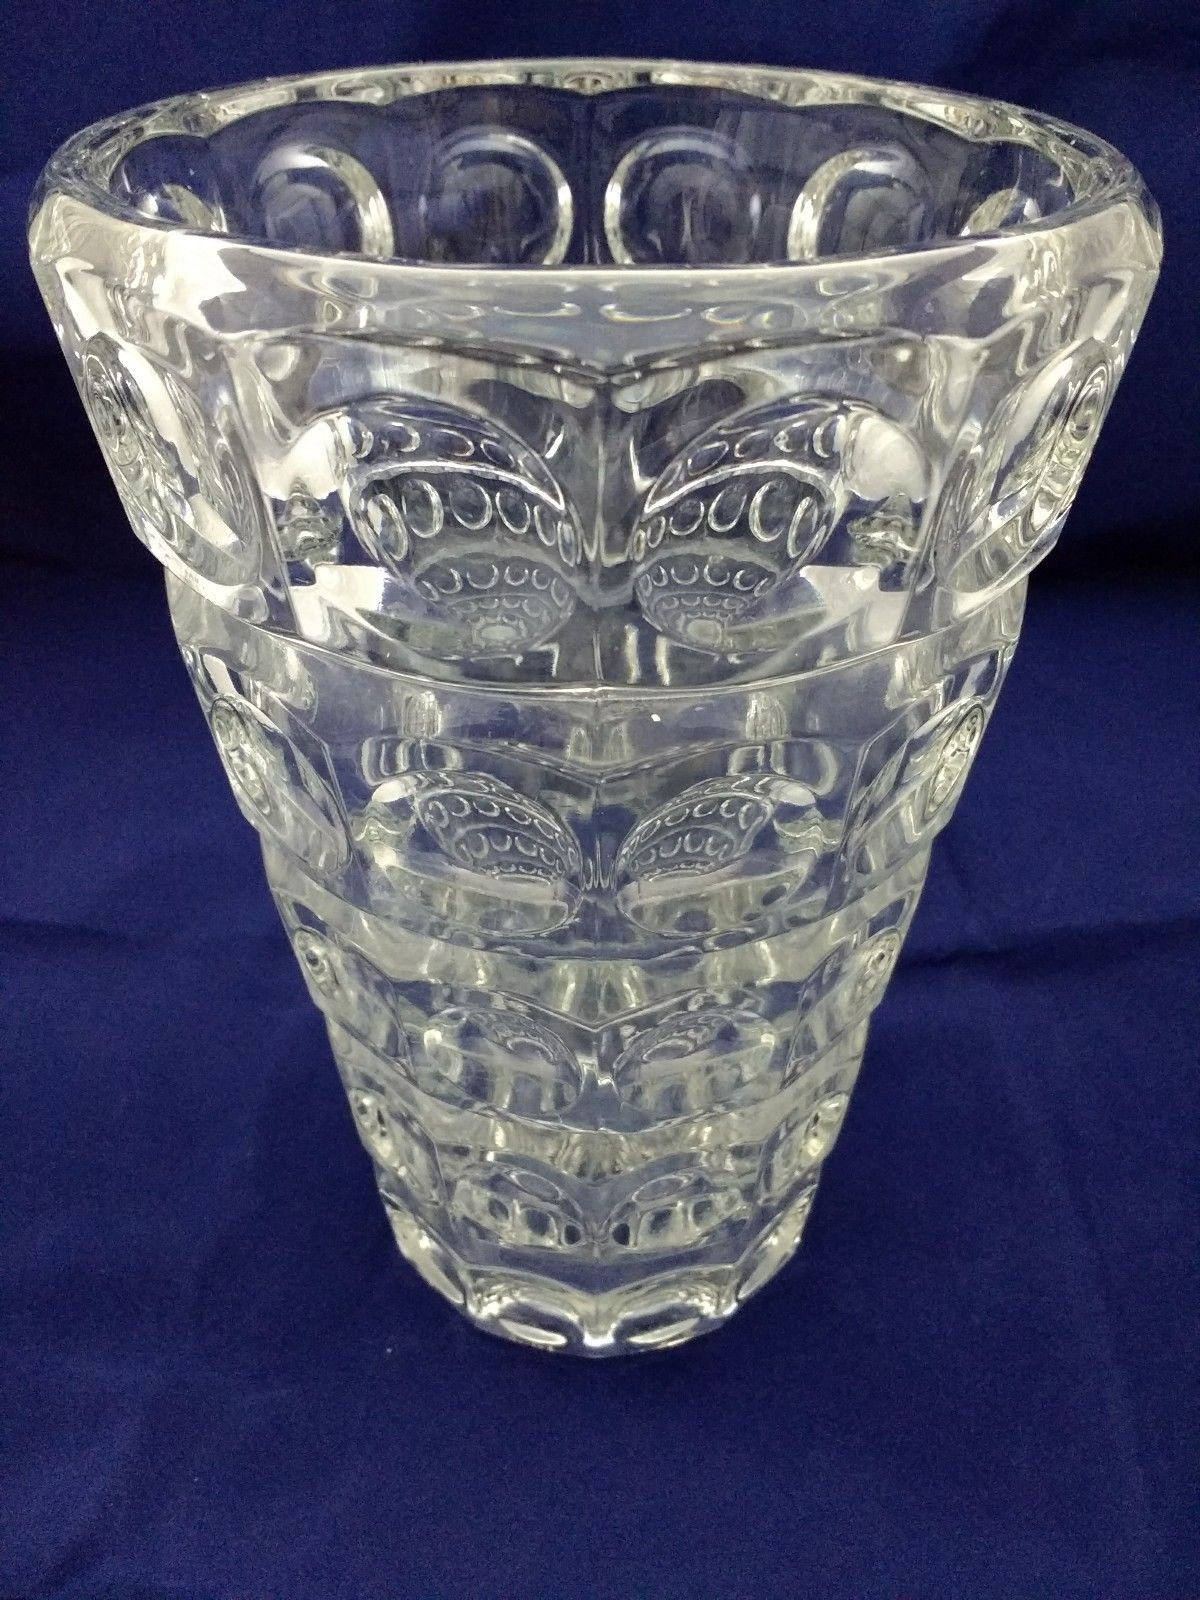 29 Lovable Ebay Tall Glass Vases 2024 free download ebay tall glass vases of sklo union rosice lense vase czech glass pinterest intended for sklo union rosice lense vase ebay